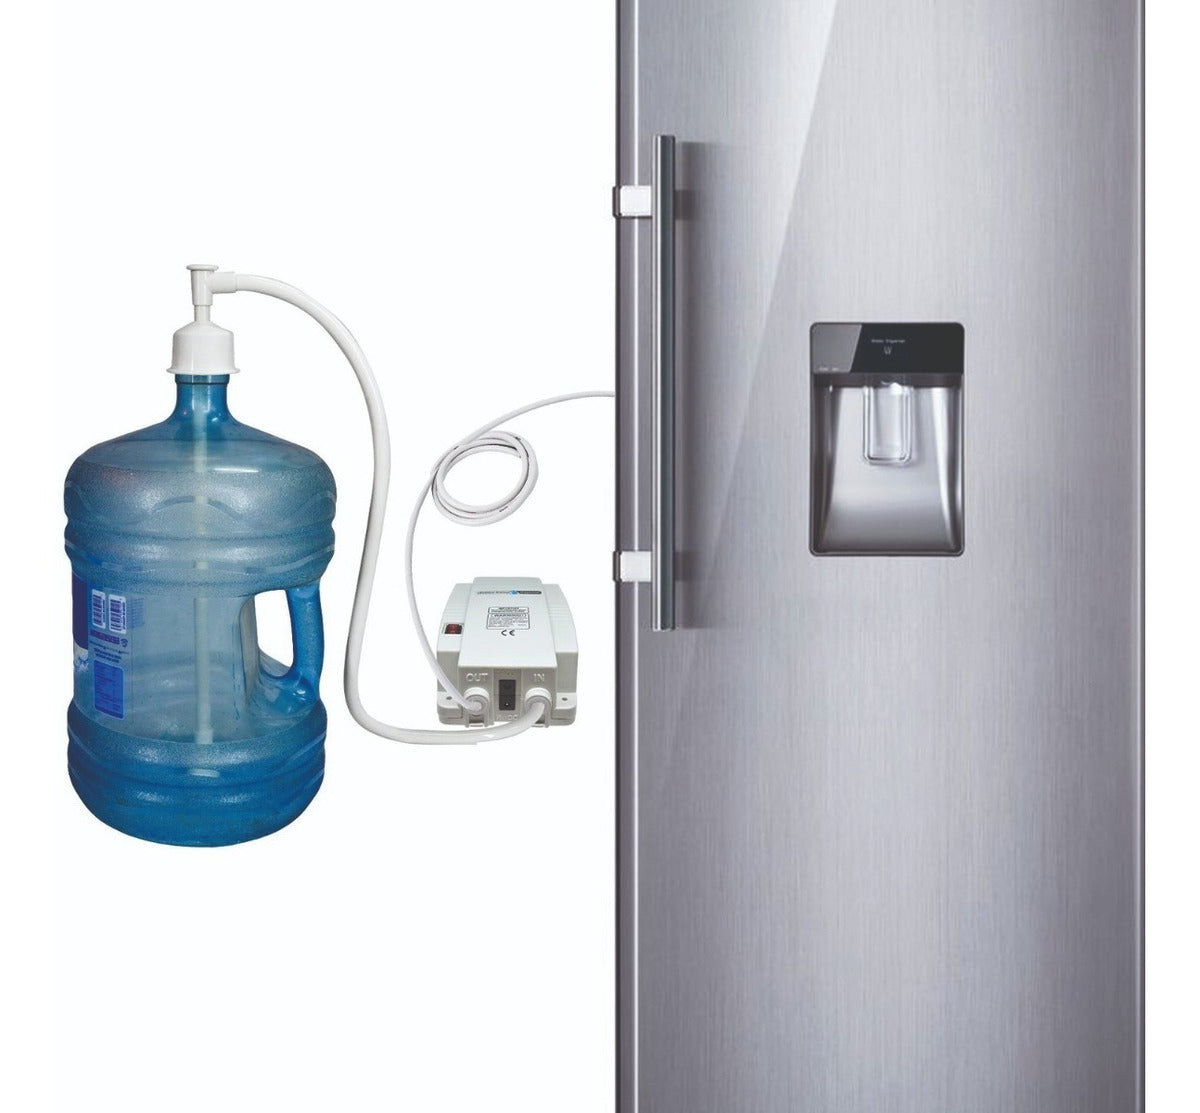  Botella dispensadora de agua para refrigerador de 1.1